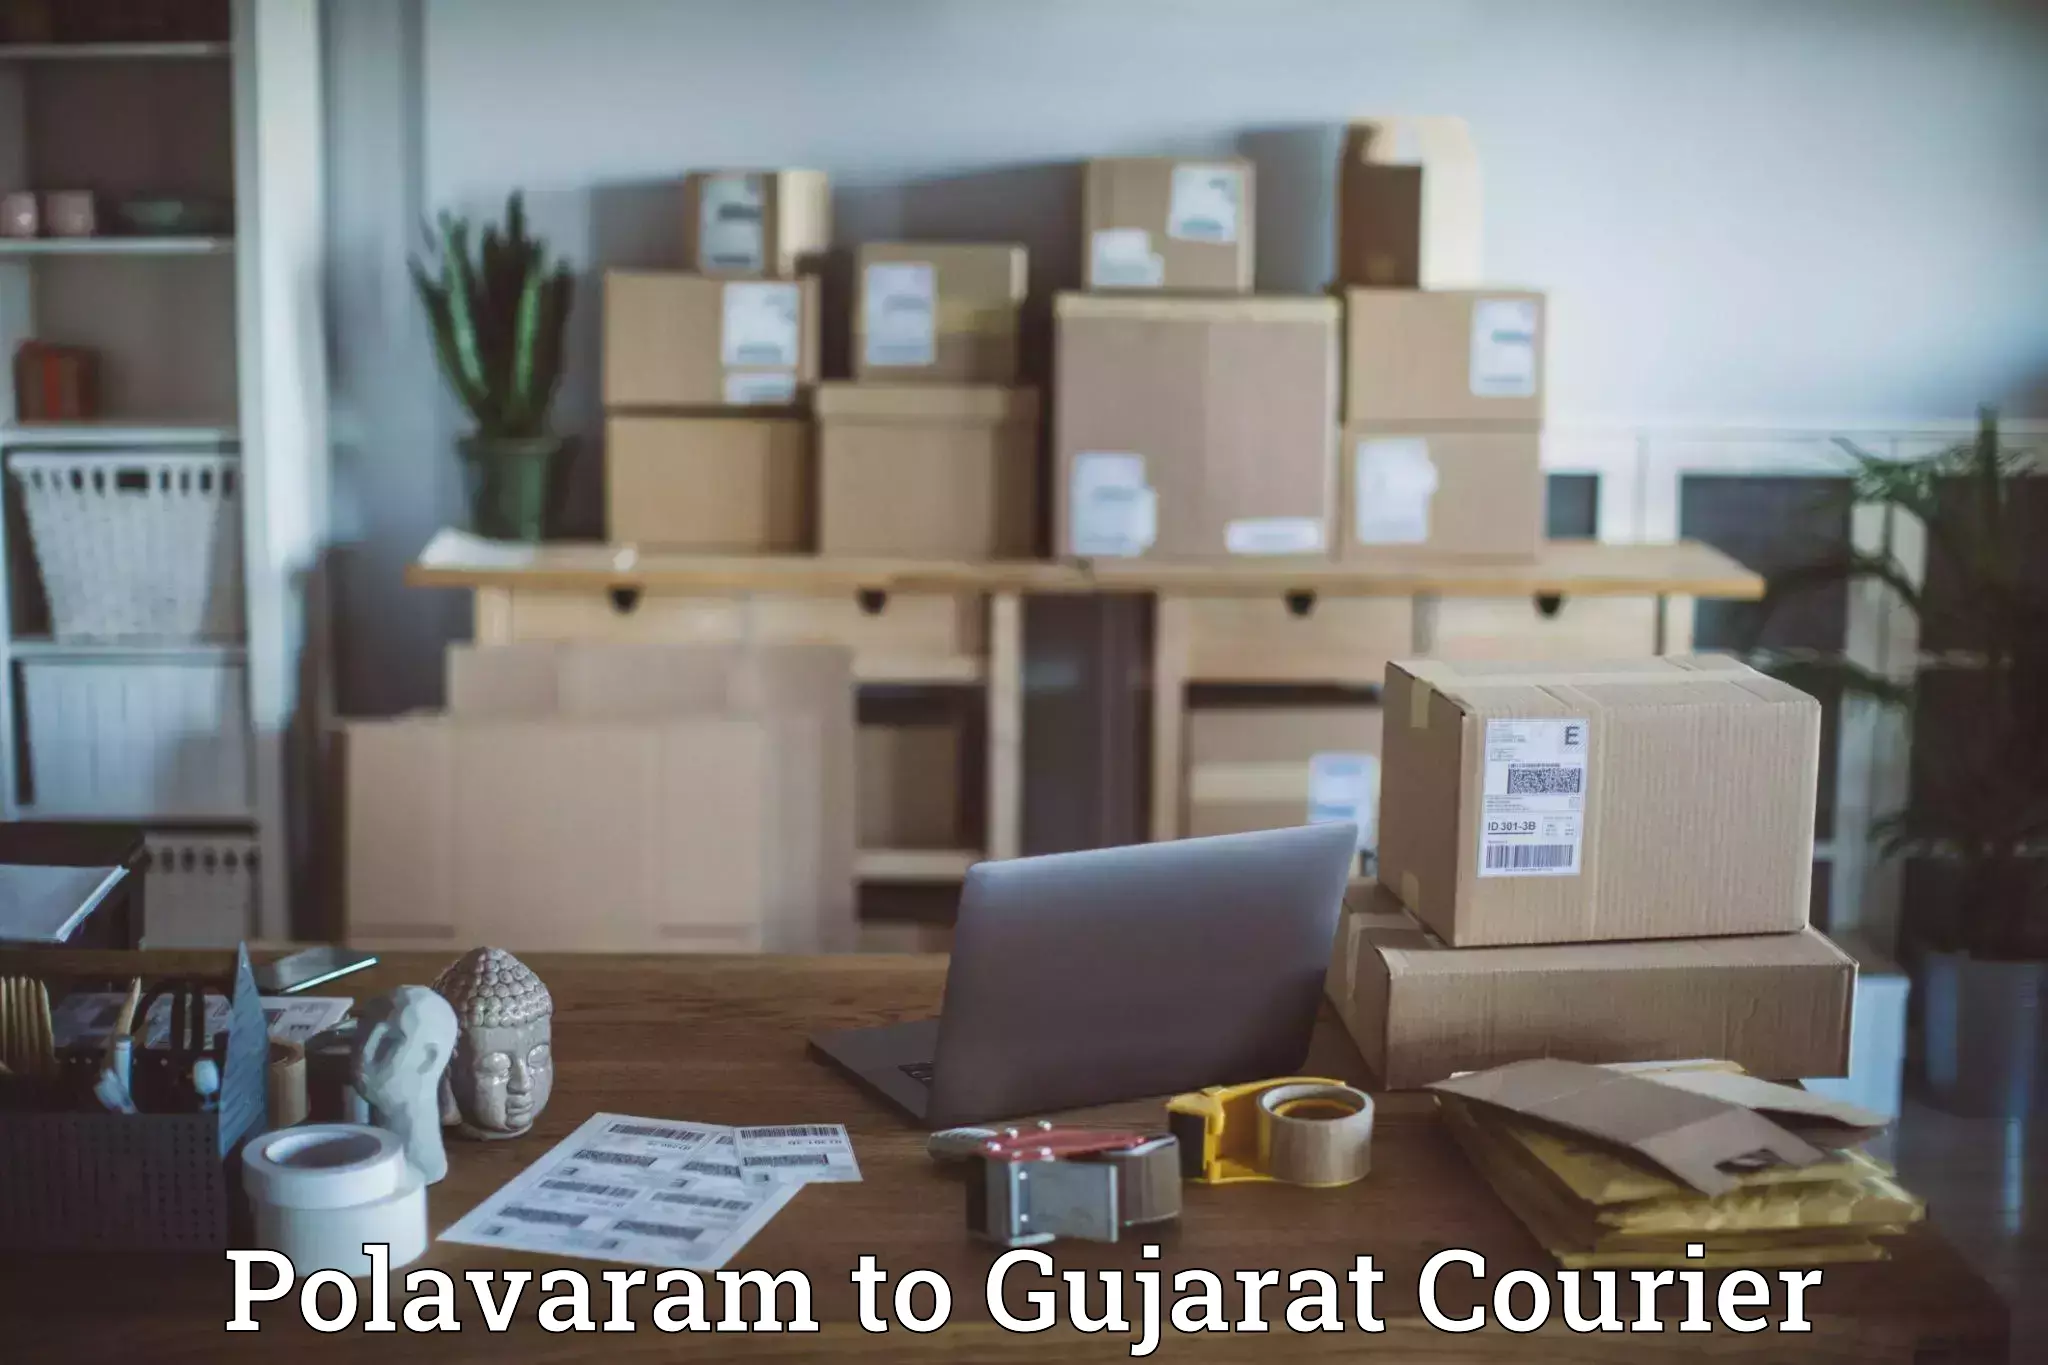 Courier app Polavaram to Vyara